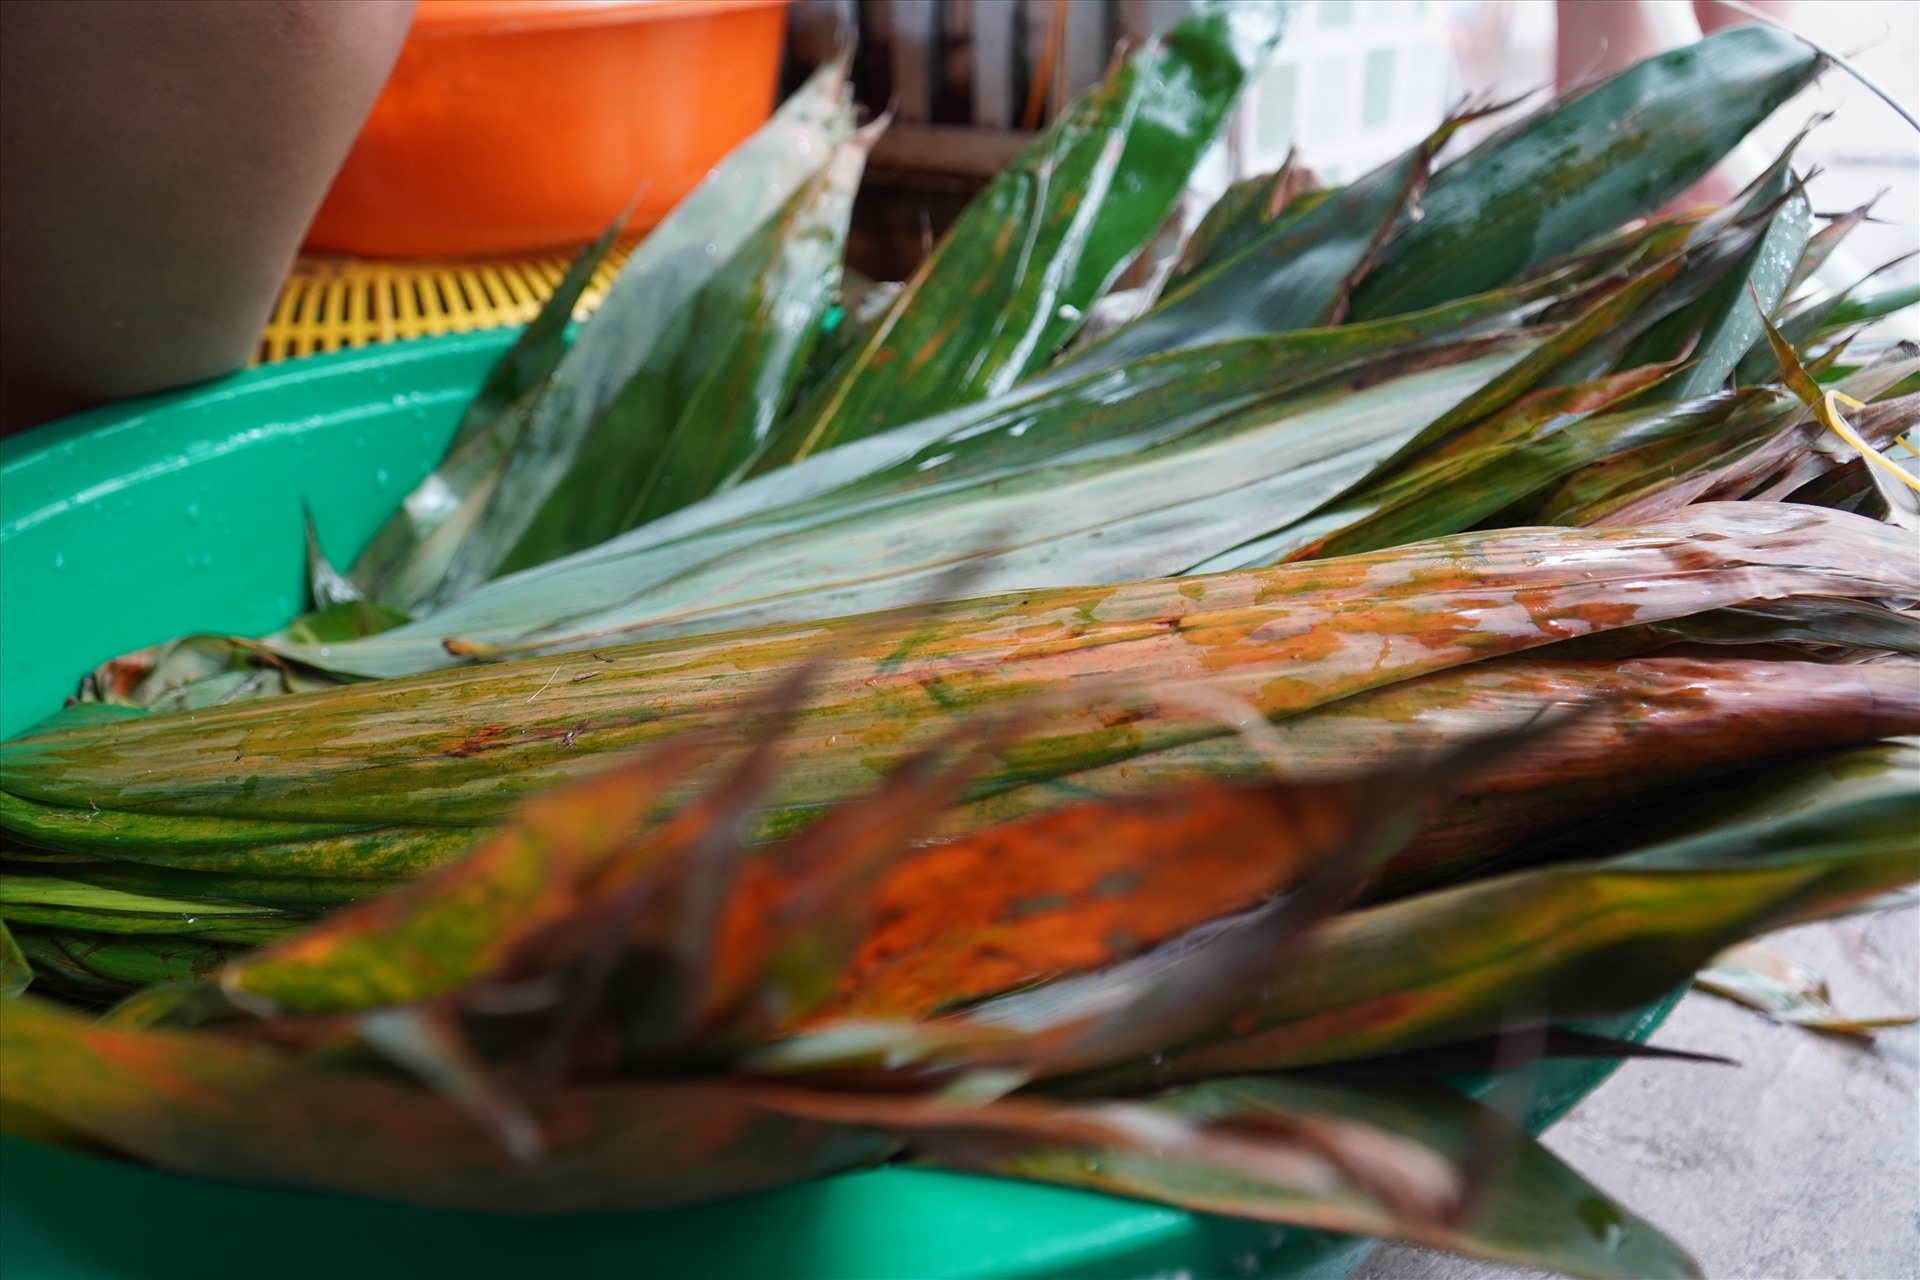 Lá bánh sau khi đưa về từ Tây Ninh, Đắk Lắk sẽ được chọn lọc kĩ càng rửa sạch sẽ, để ráo nước.